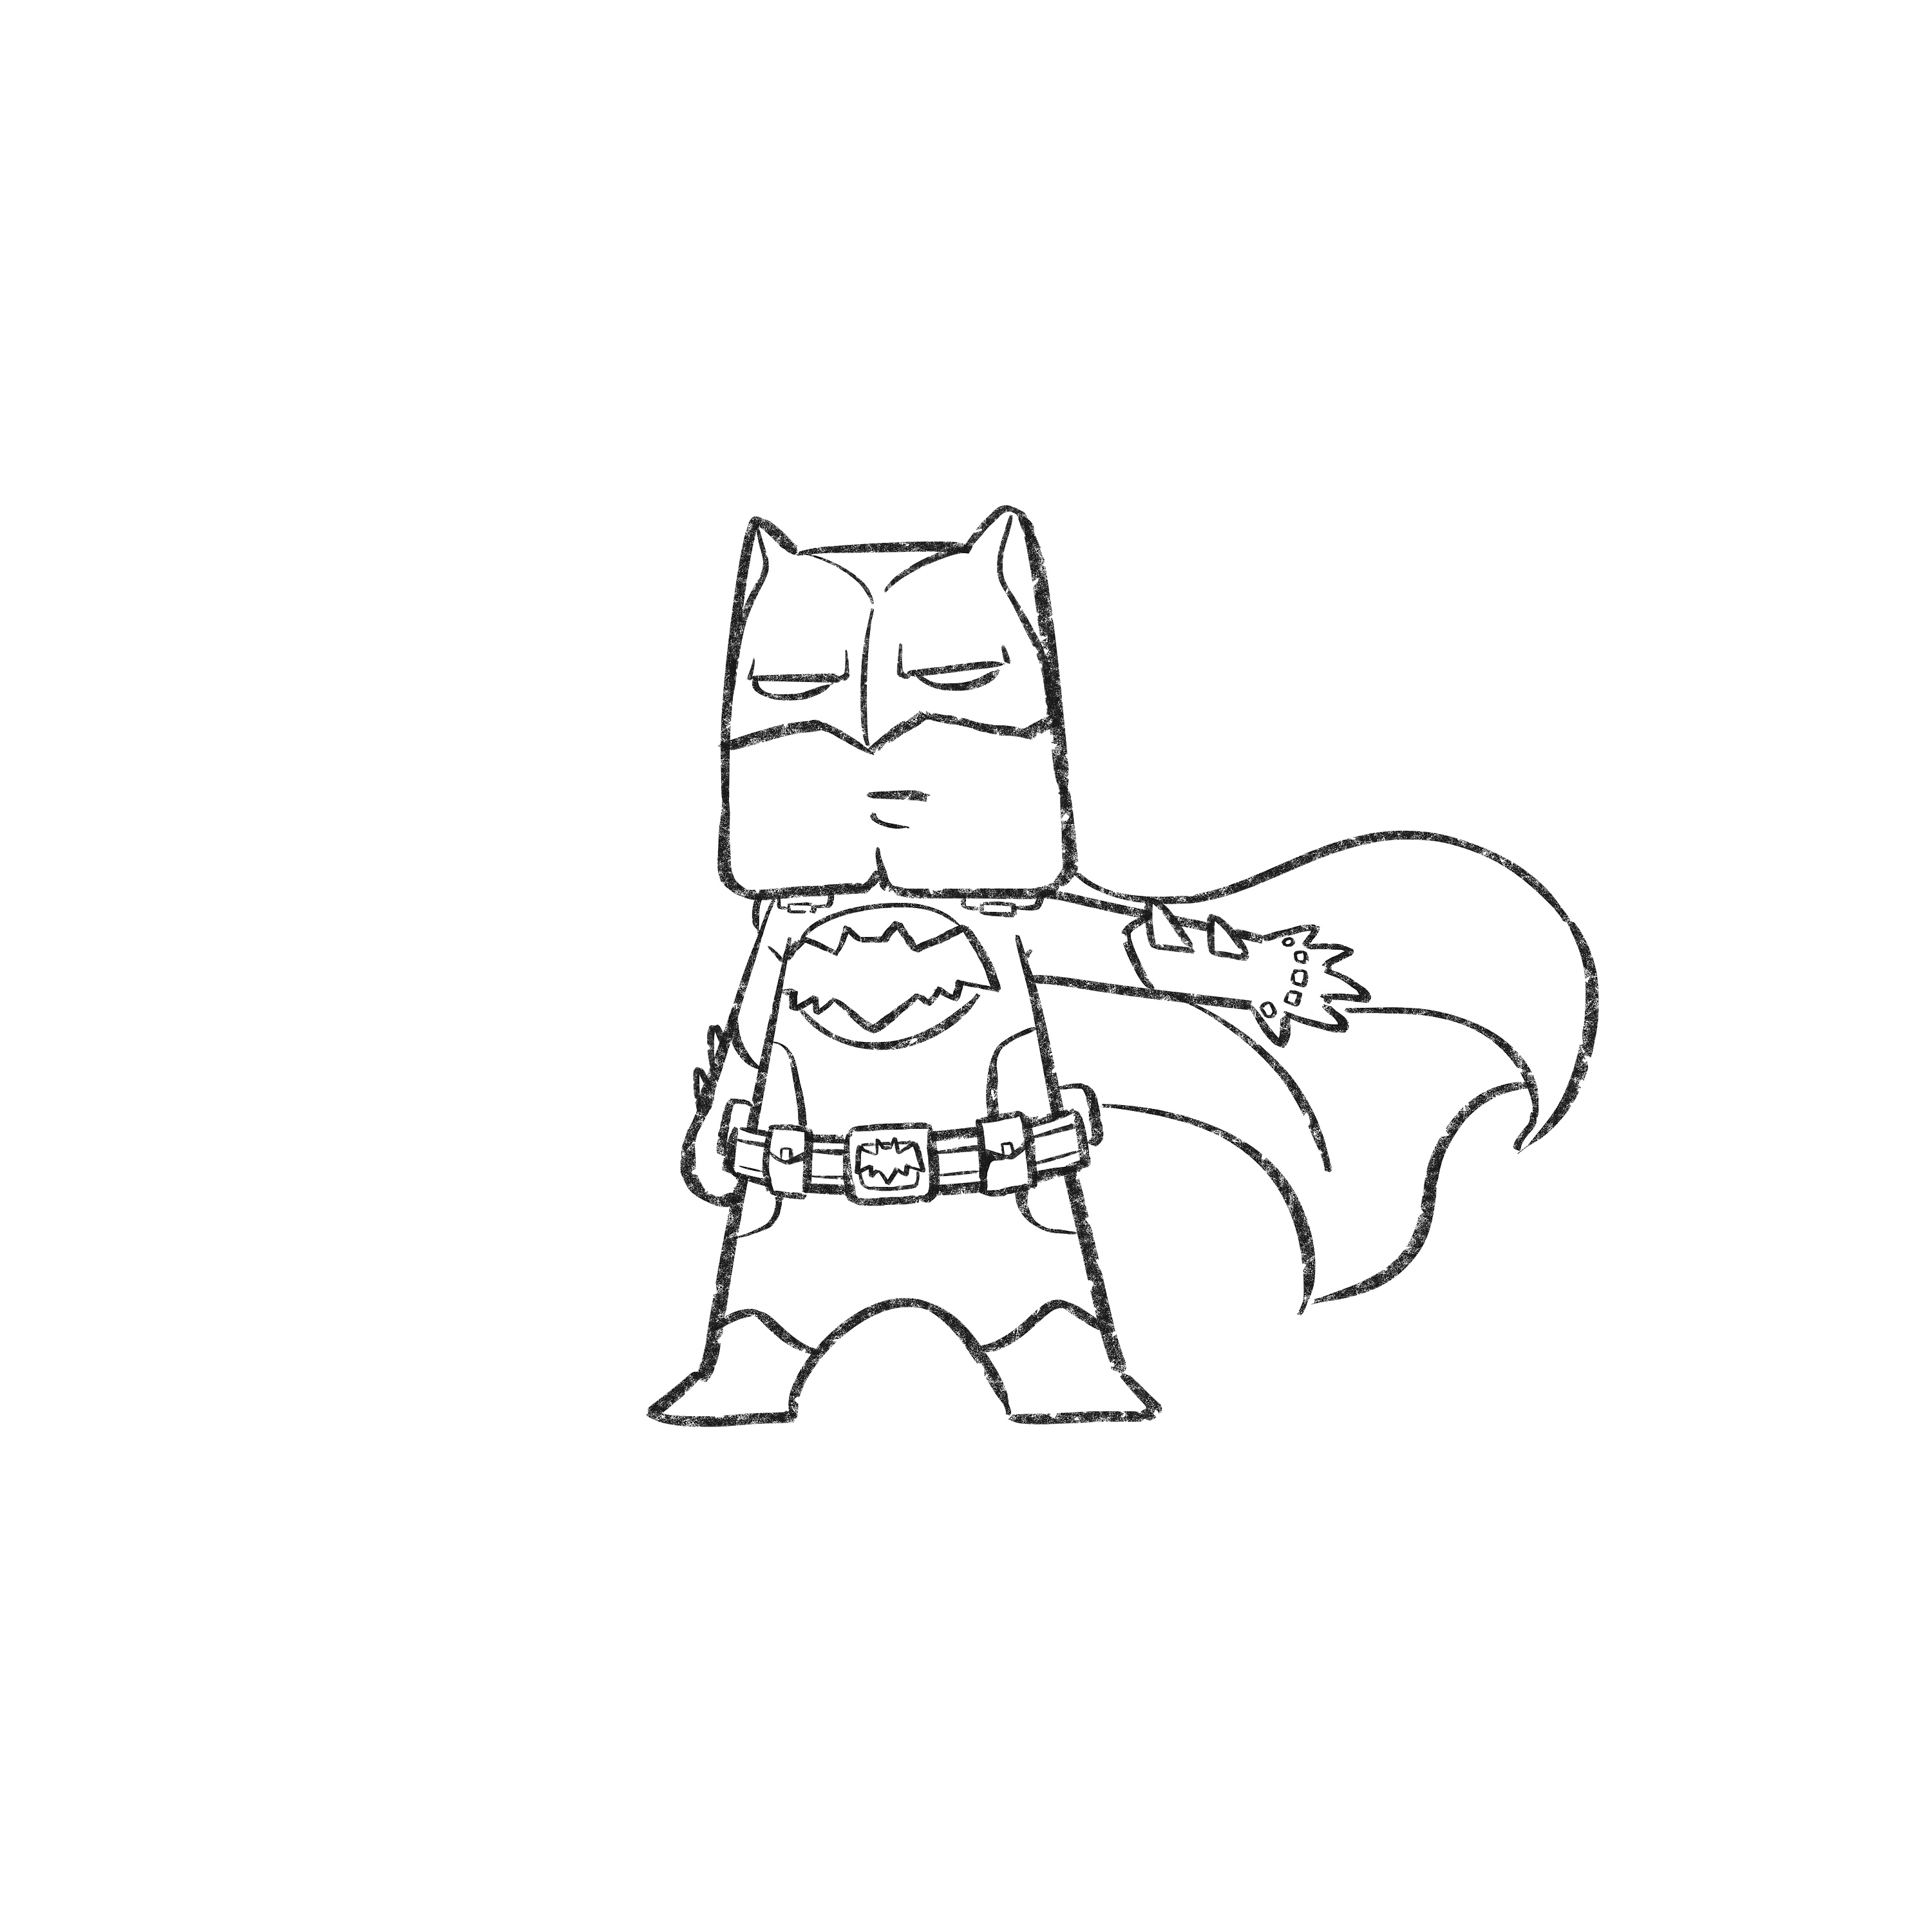 蝙蝠侠简单画法图片